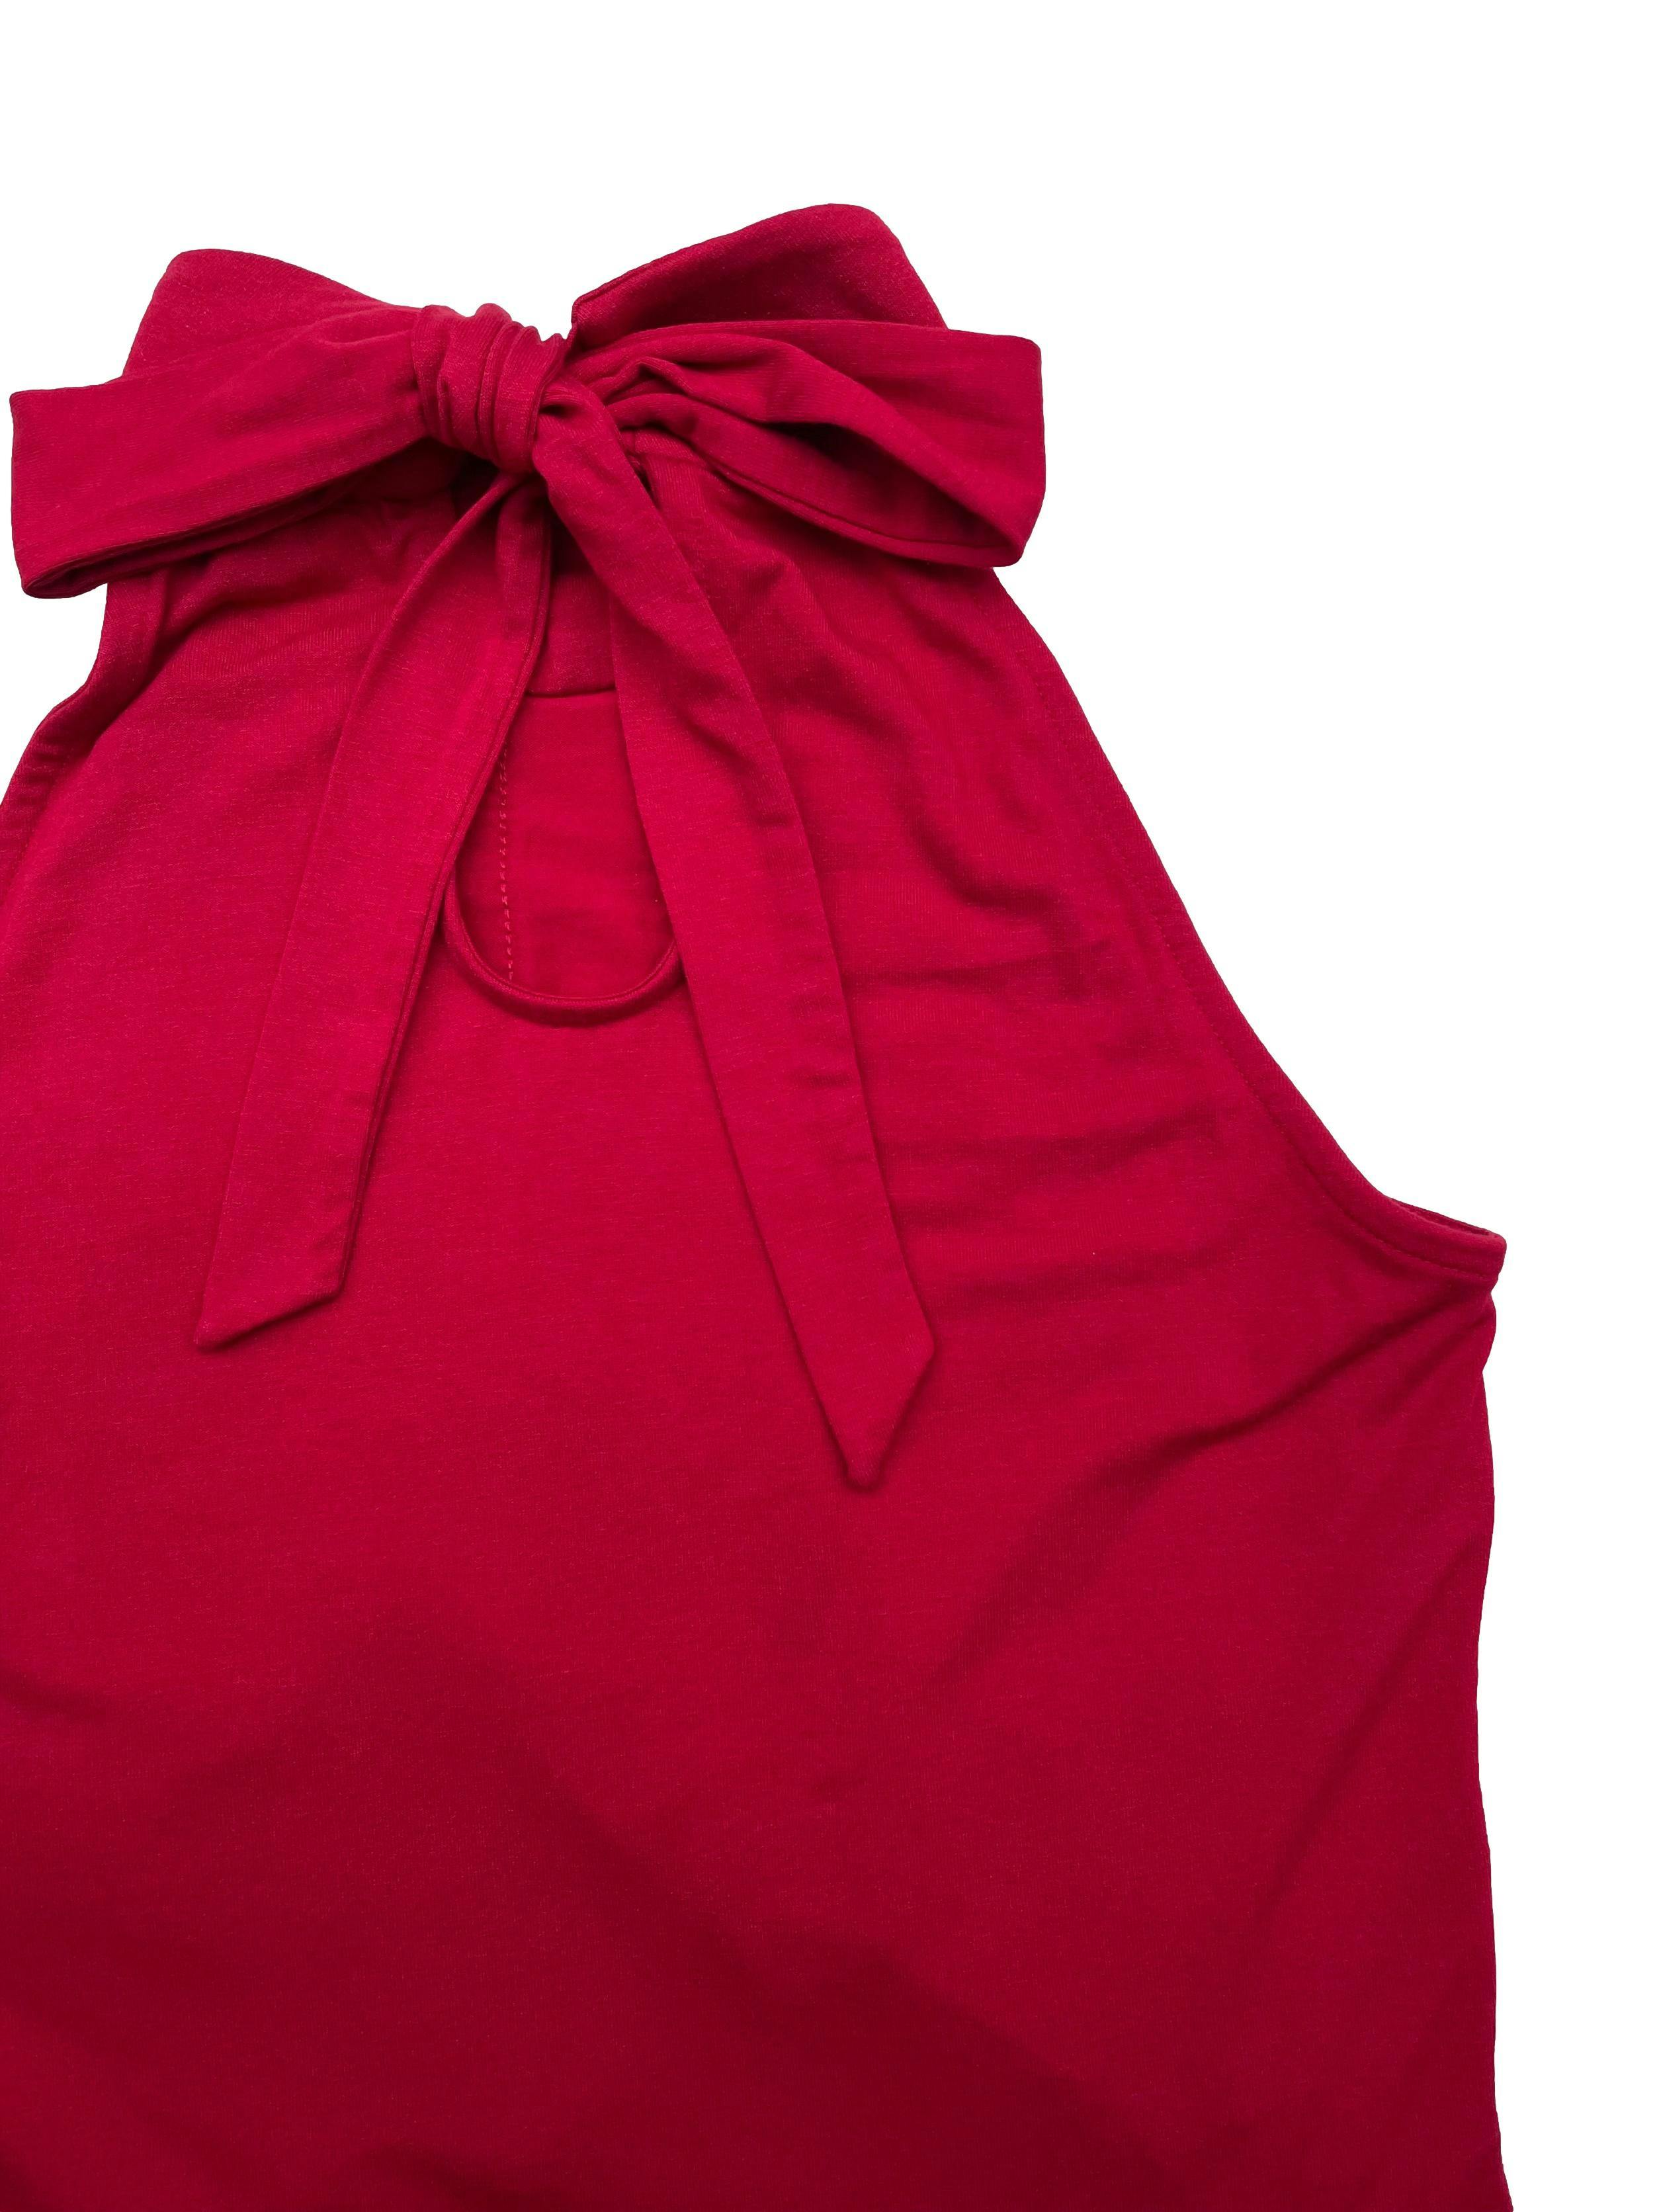 Blusa White House roja con cuello halter y volantes plisados, tela stretch. Precio original S/340. Busto 80cm sin estirar, Largo 60cm.